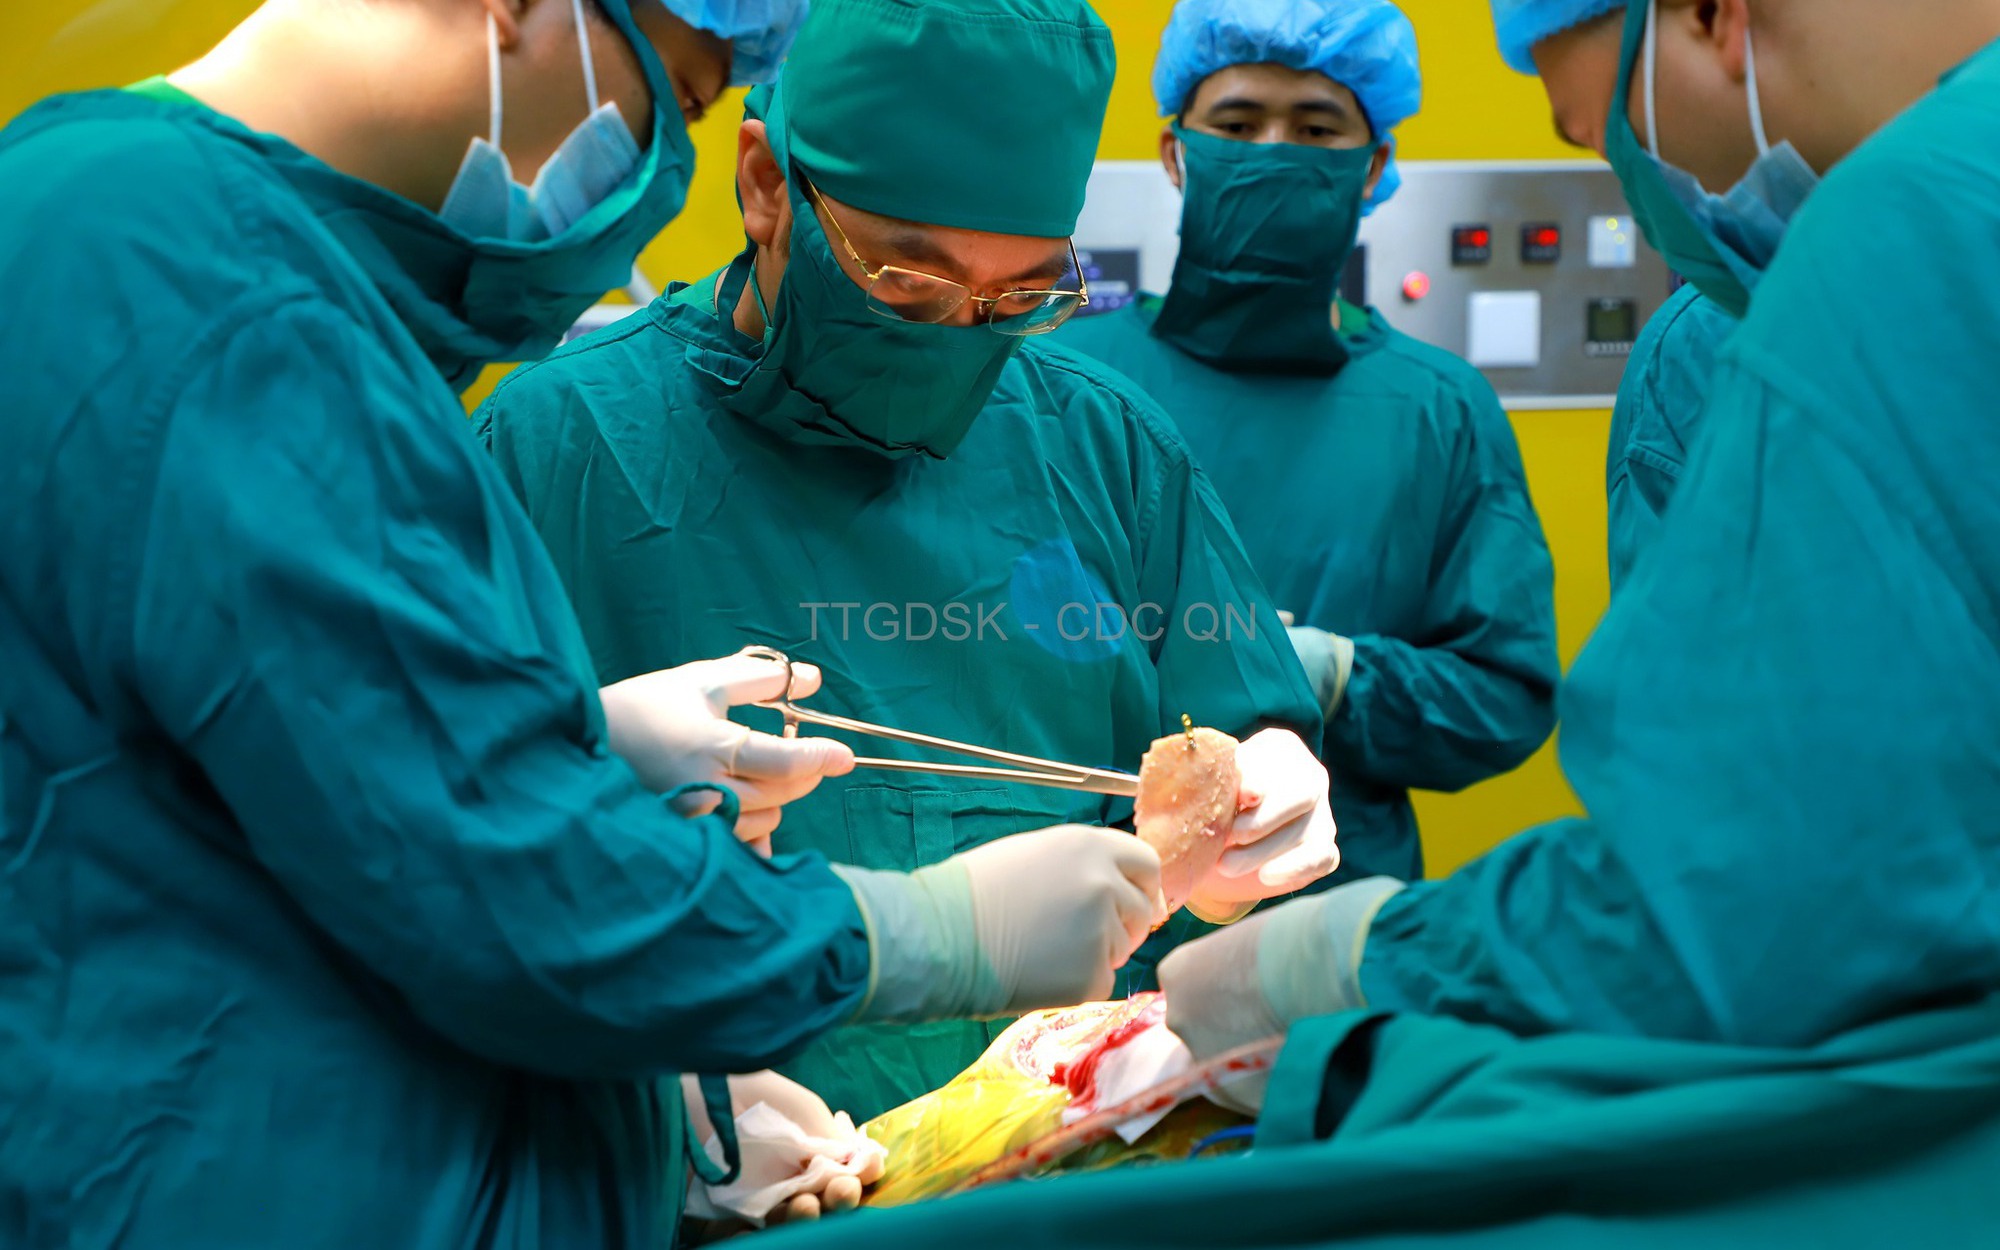 Ca ghép sọ tự thân đầu tiên ở trung tâm y tế tuyến huyện của Quảng Ninh